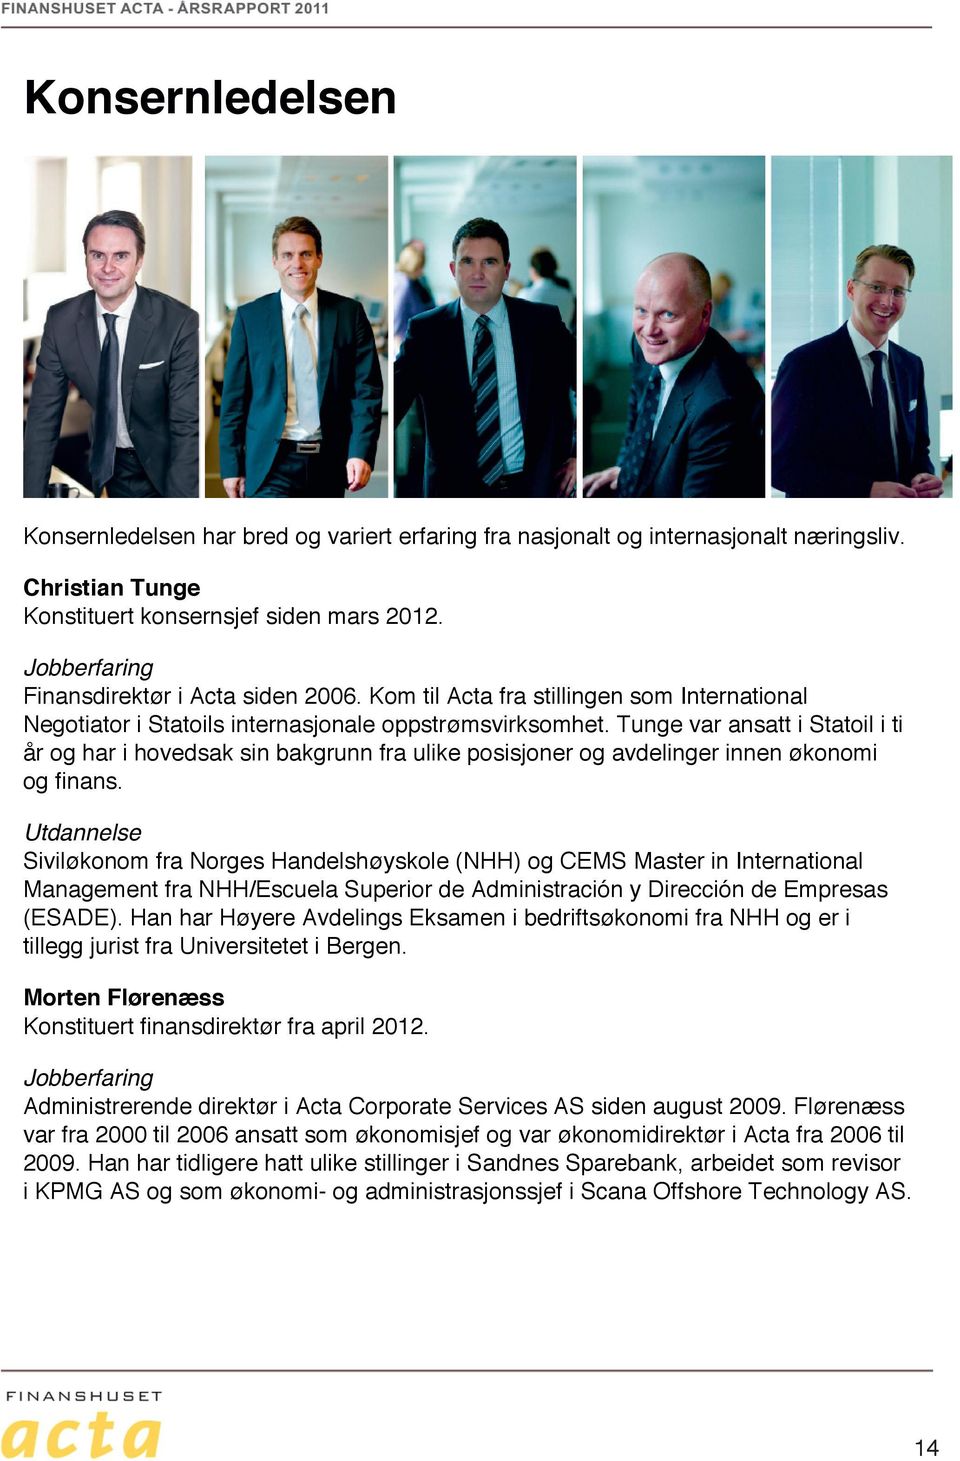 Tunge var ansatt i Statoil i ti år og har i hovedsak sin bakgrunn fra ulike posisjoner og avdelinger innen økonomi og finans.